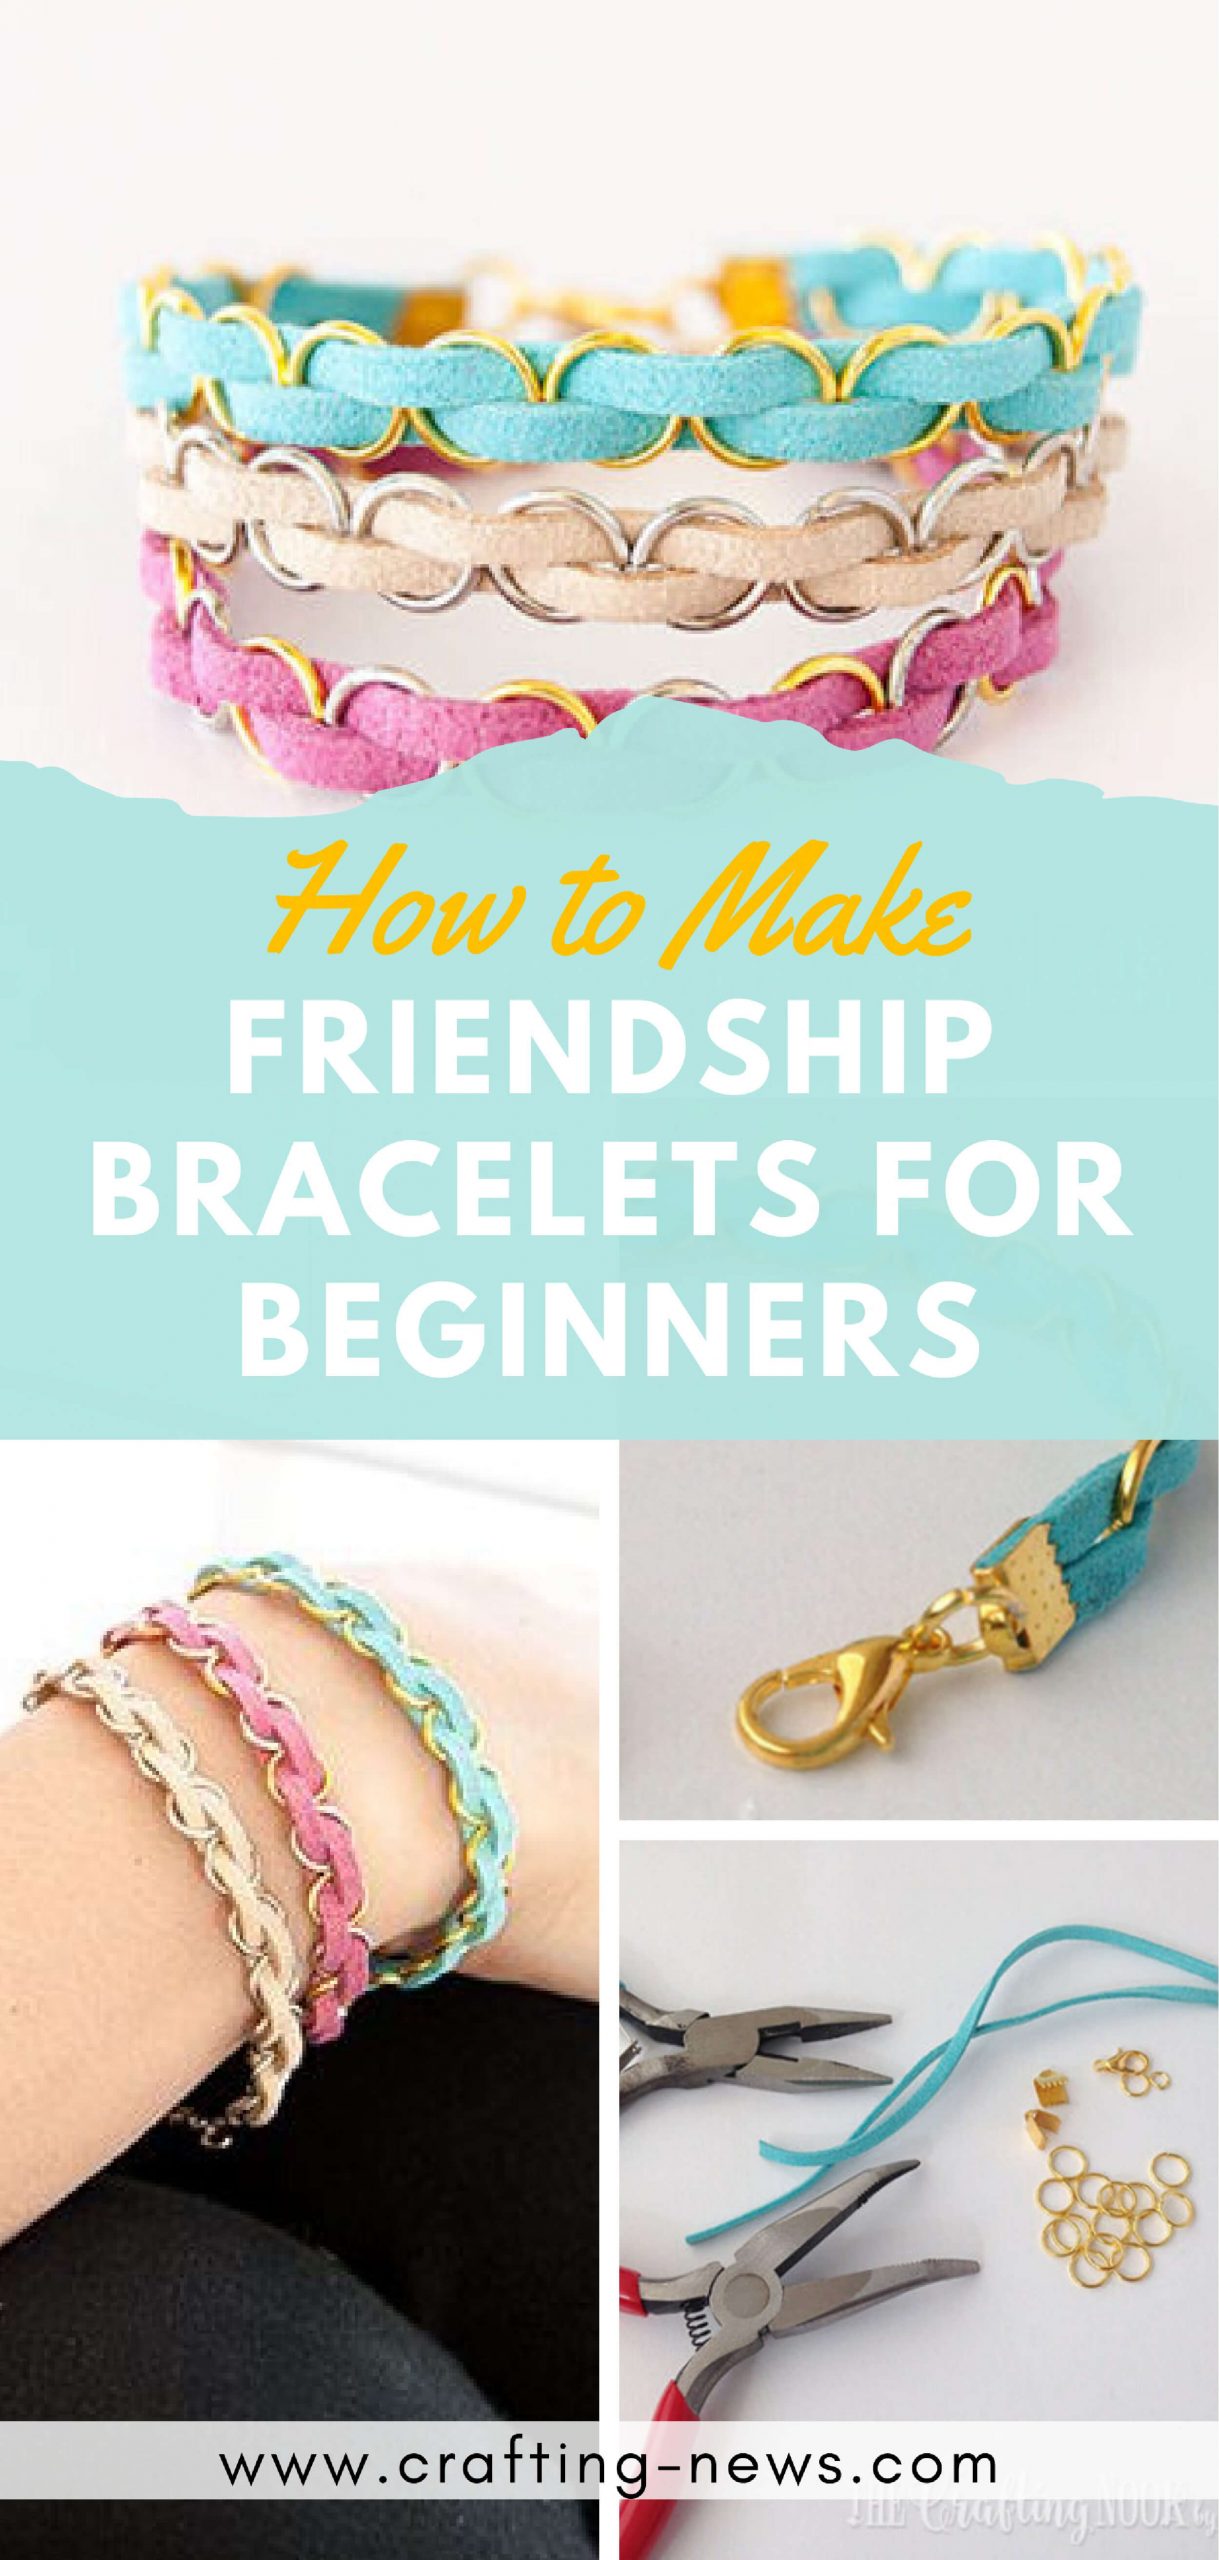 How to Make Friendship Bracelets for Beginners | Written